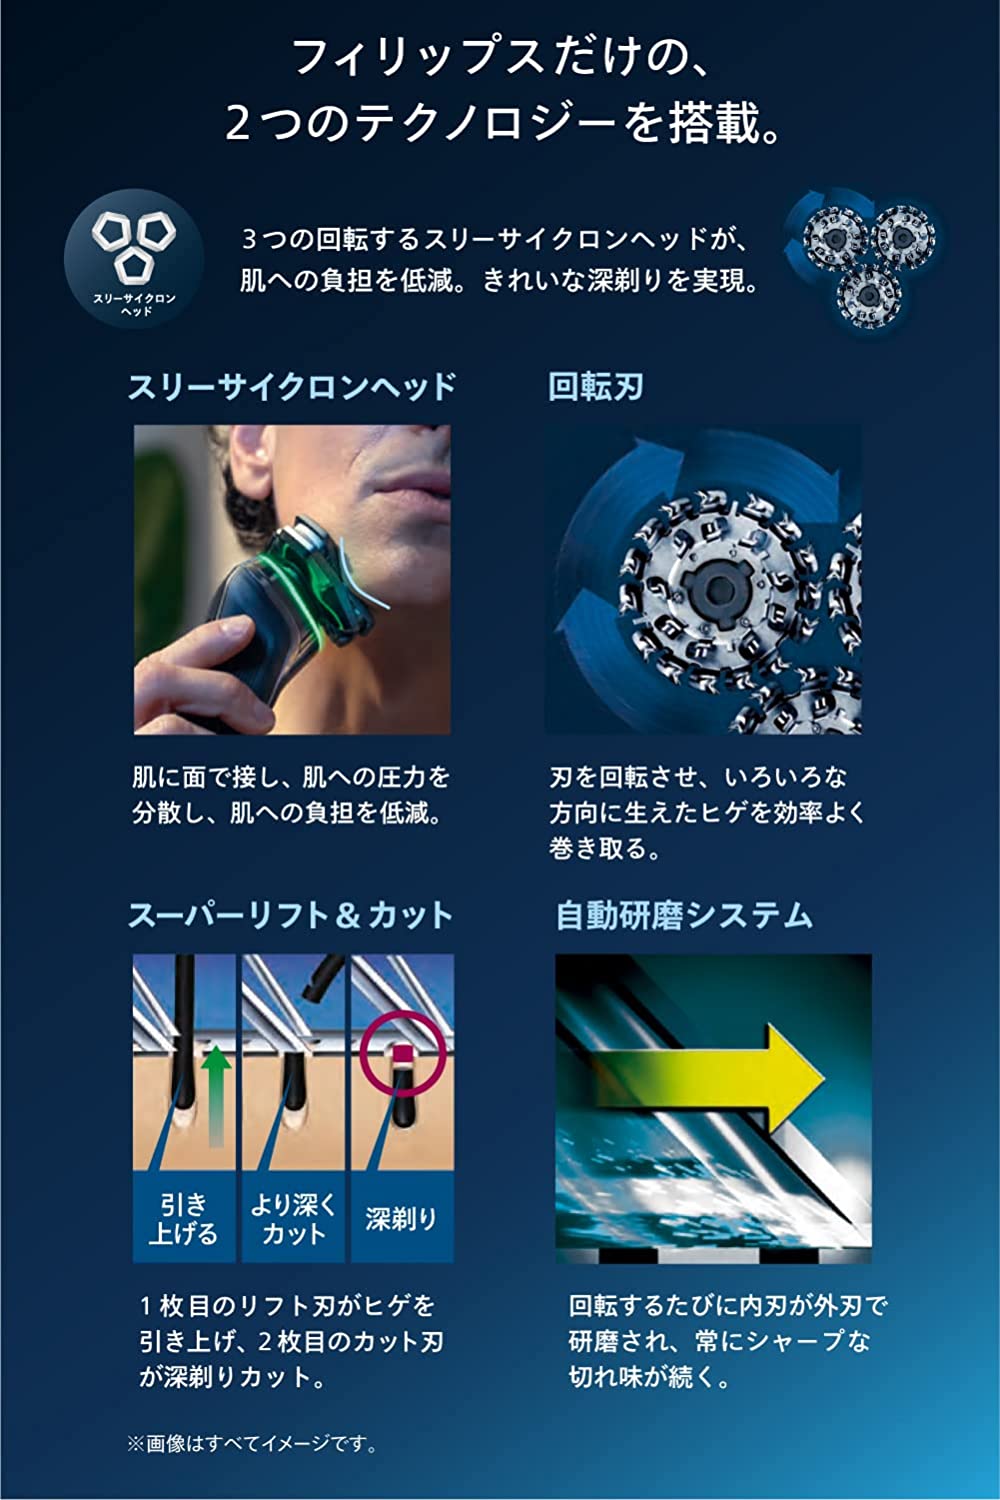 日本代購】Philips 飛利浦9000系列電動刮鬍刀72刀片S9985/50 | 阿尼